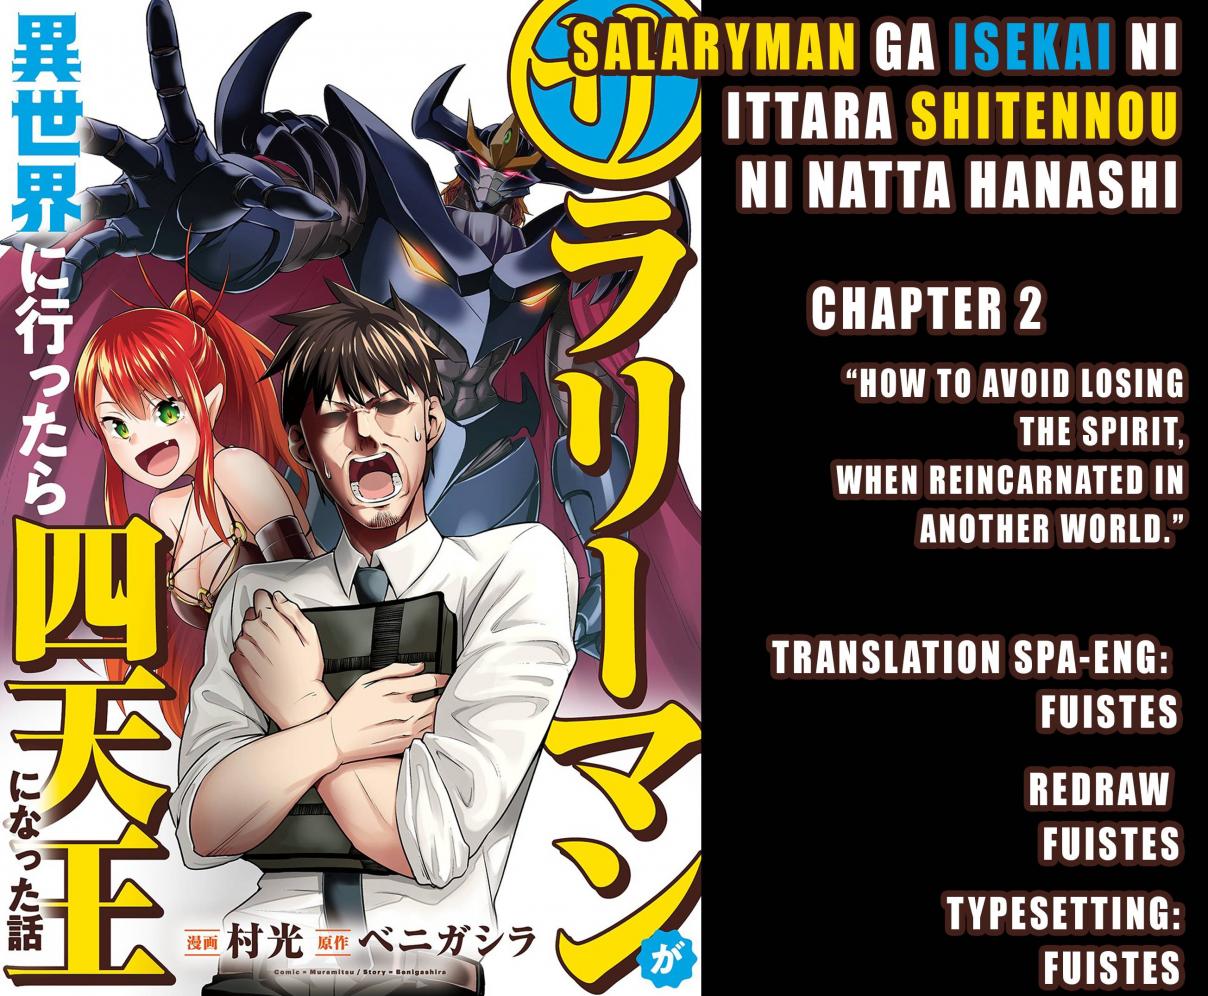 Salaryman ga Isekai ni Ittara Shitennou ni Natta Hanashi Vol. 1 Ch. 2